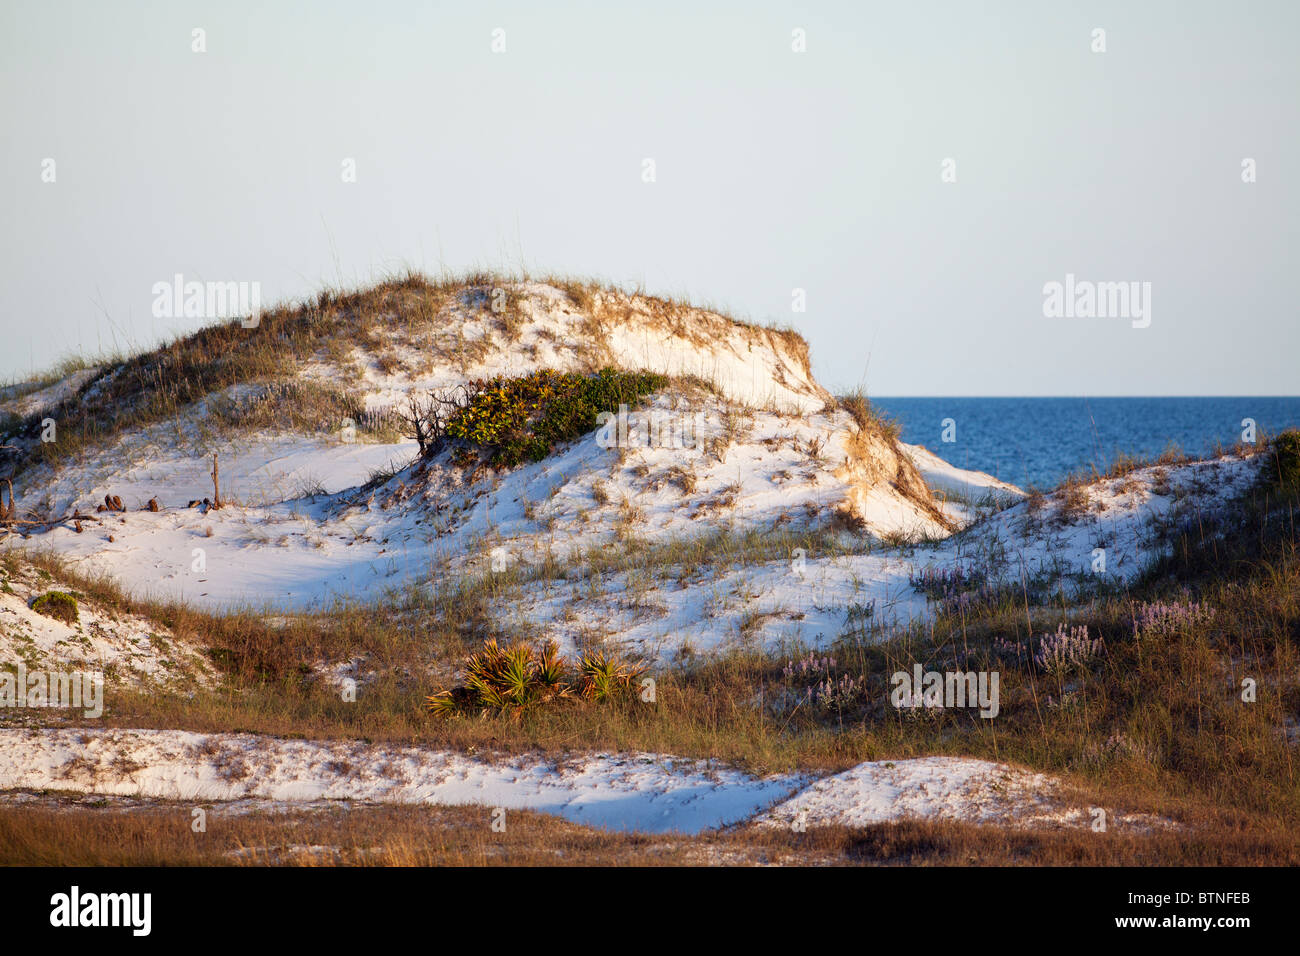 Dunas de arena en la costa del golfo de Florida. Foto de stock